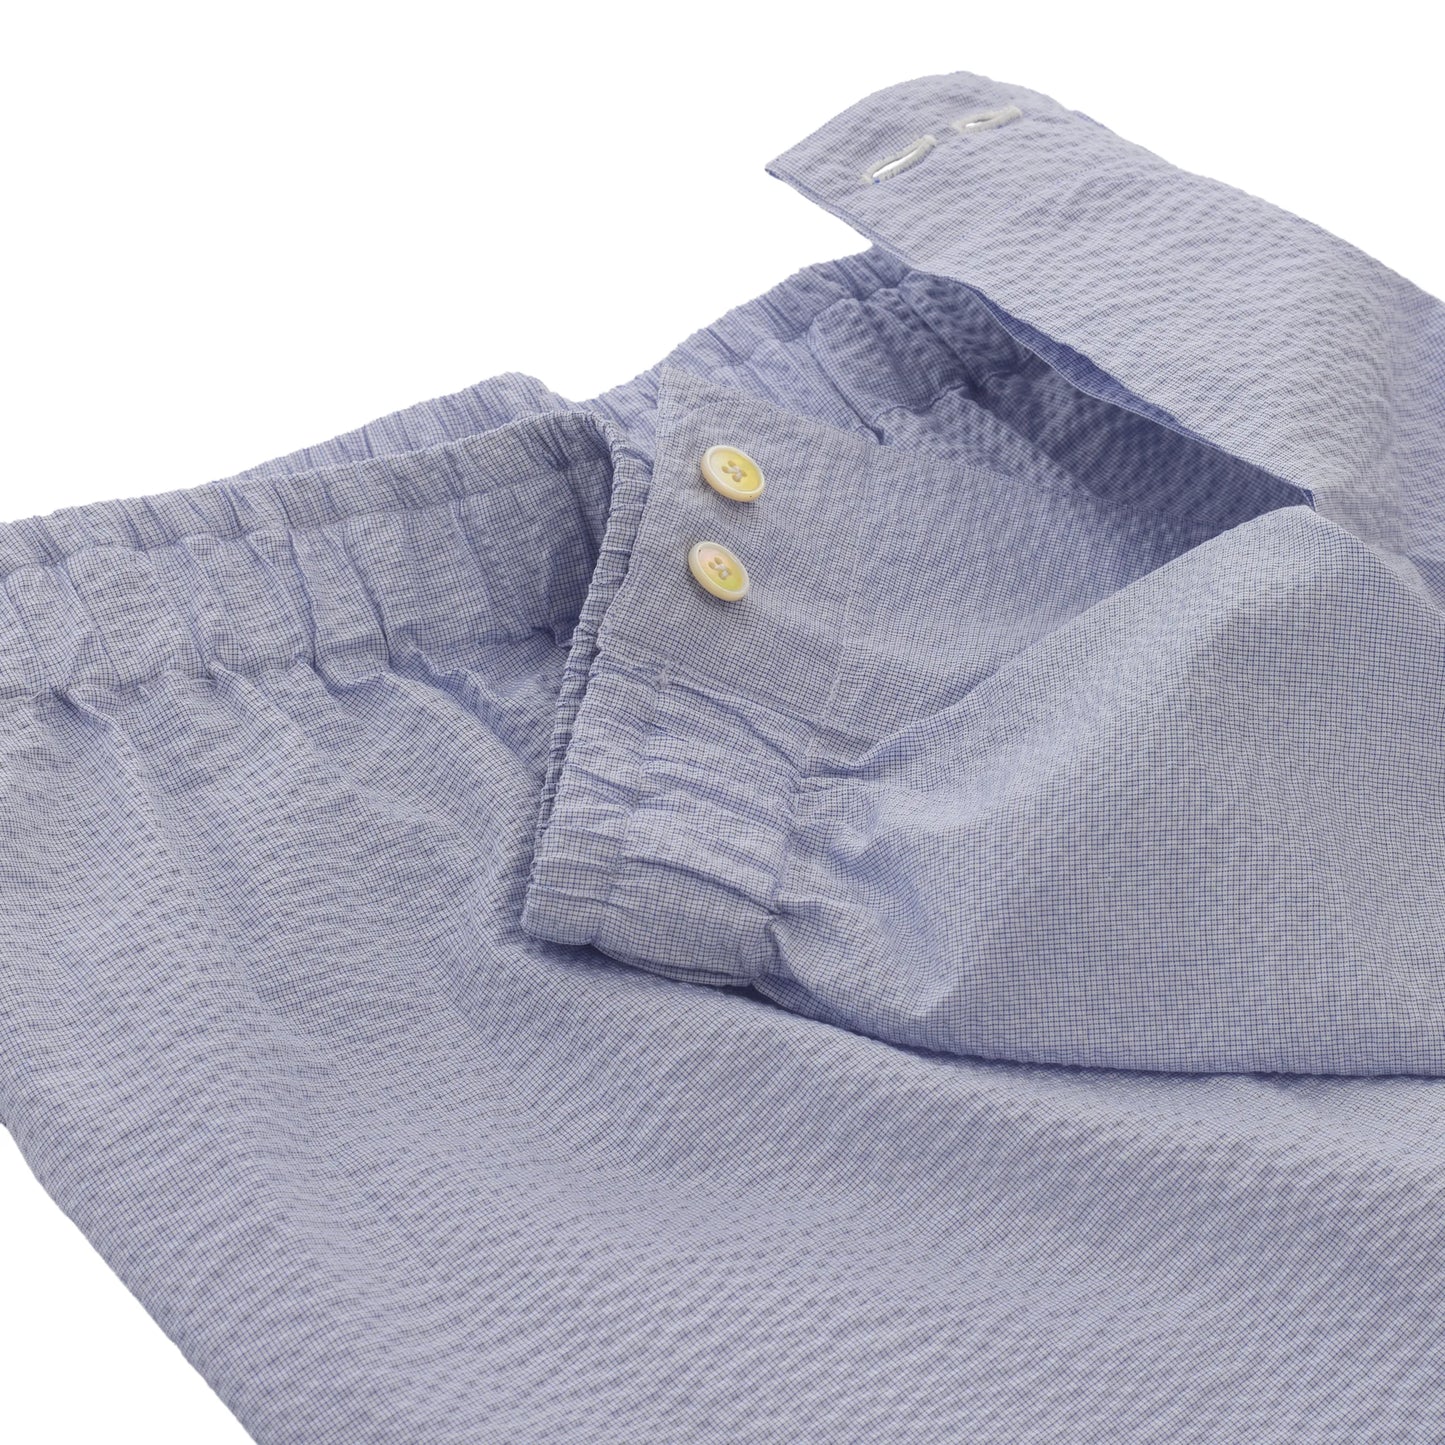 Cotton Fabric Pajamas in Light Blue